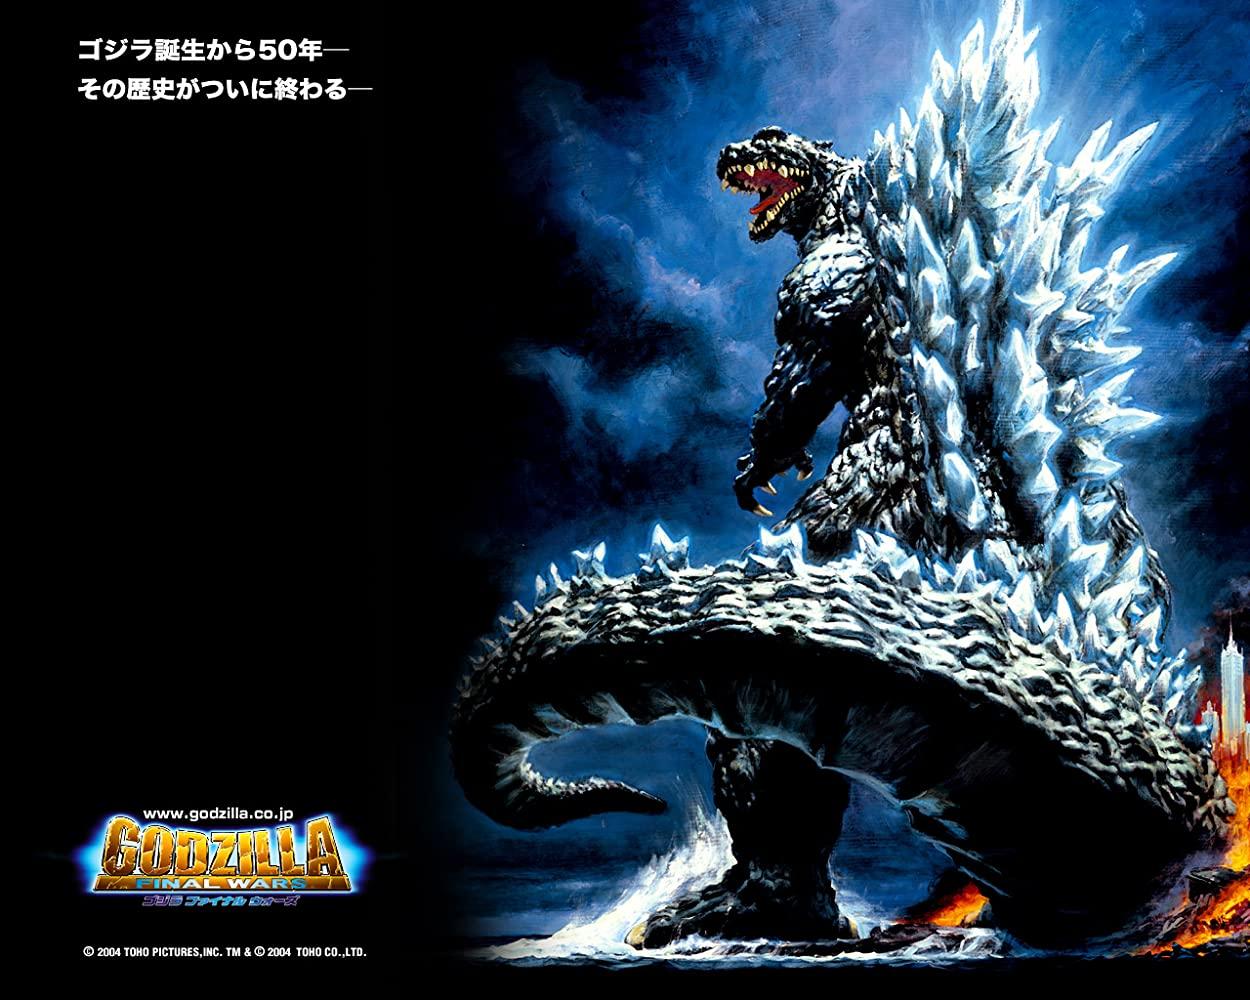 مشاهدة فيلم Godzilla: Final Wars (2004) مترجم